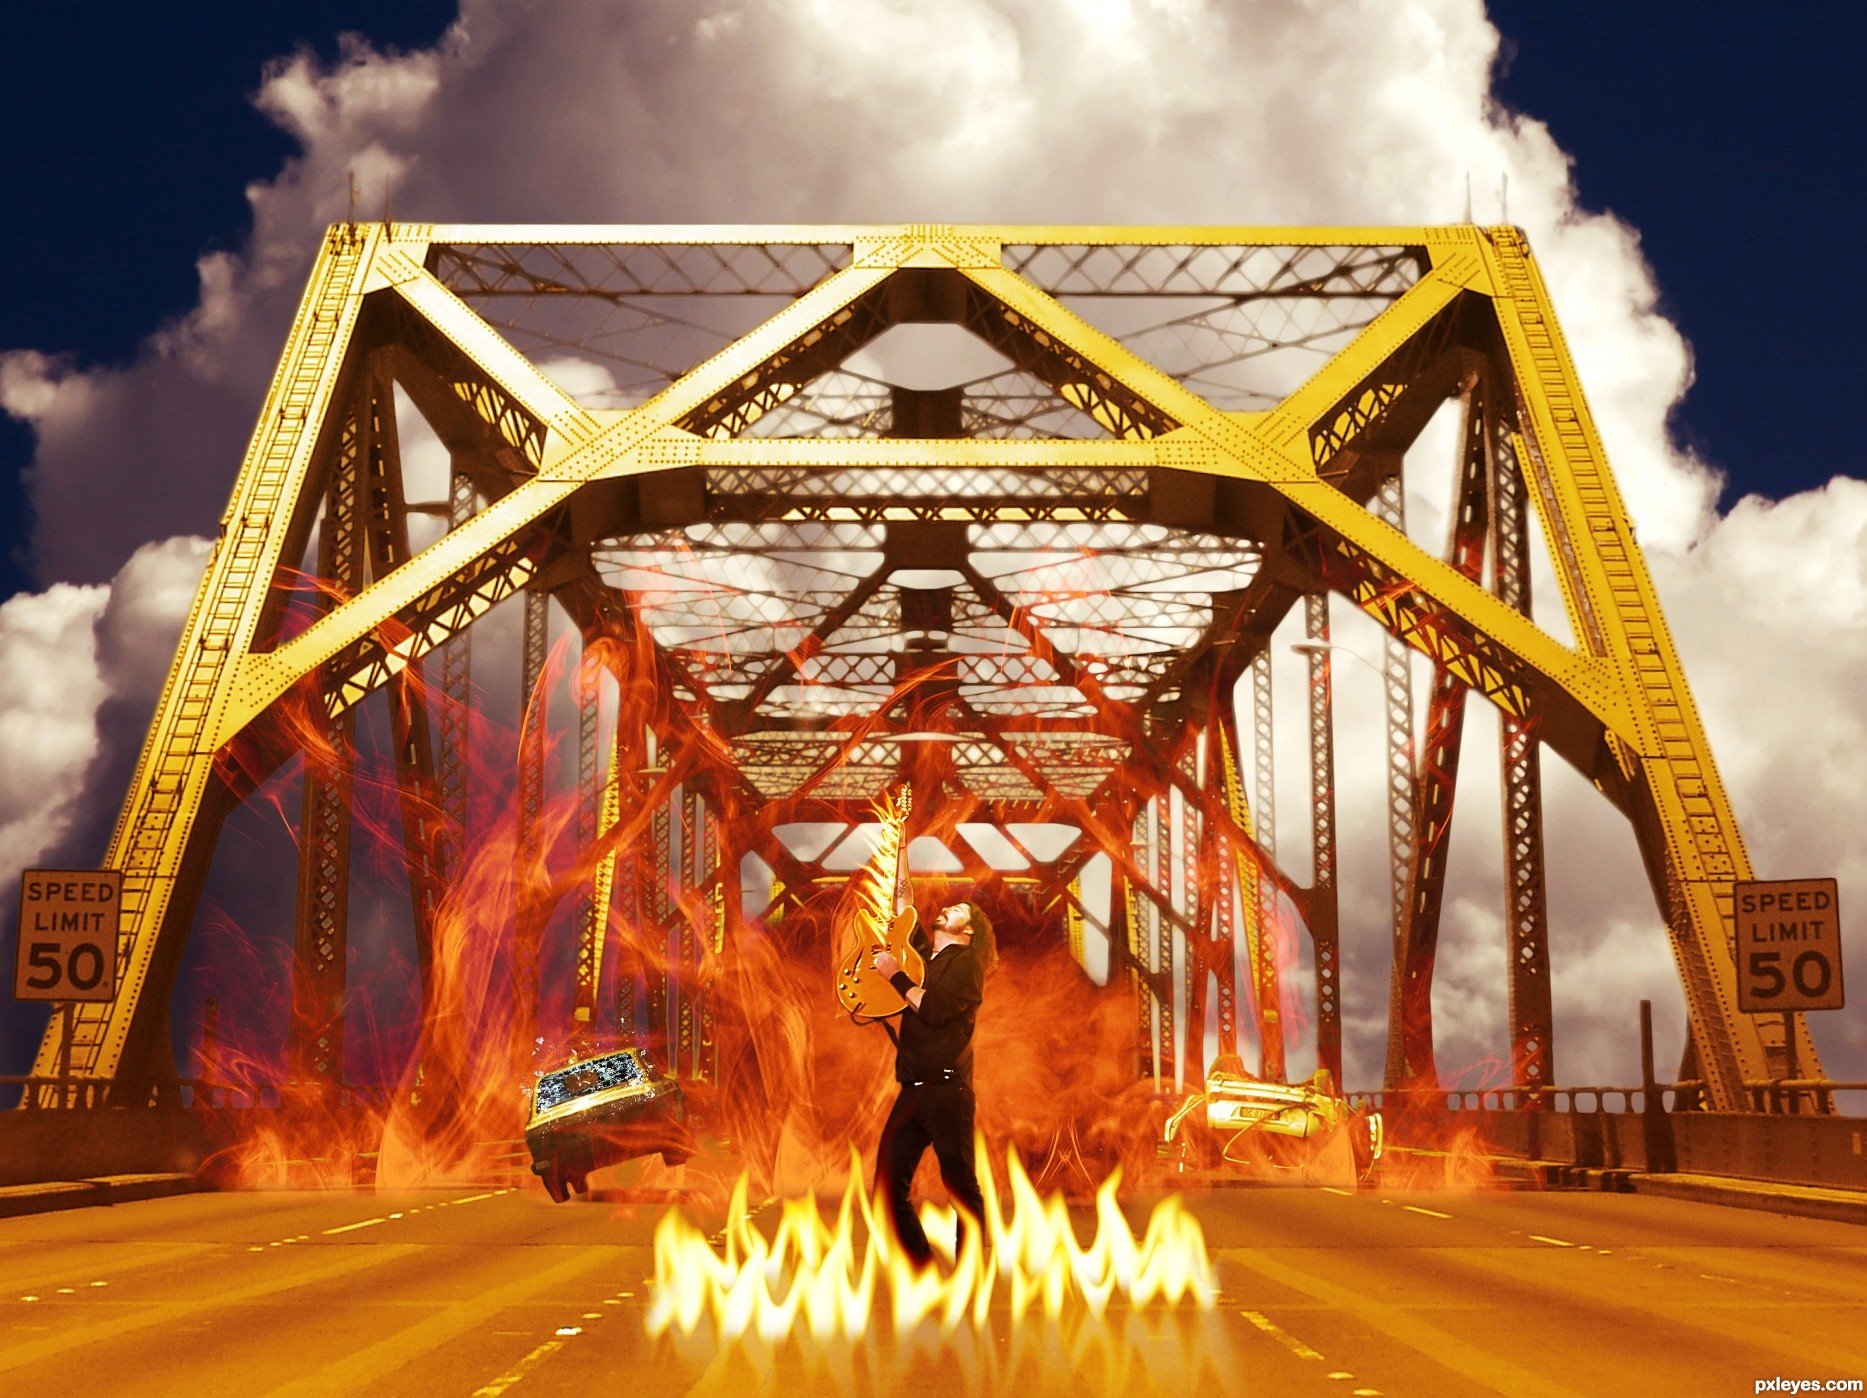 Почему горят мосты